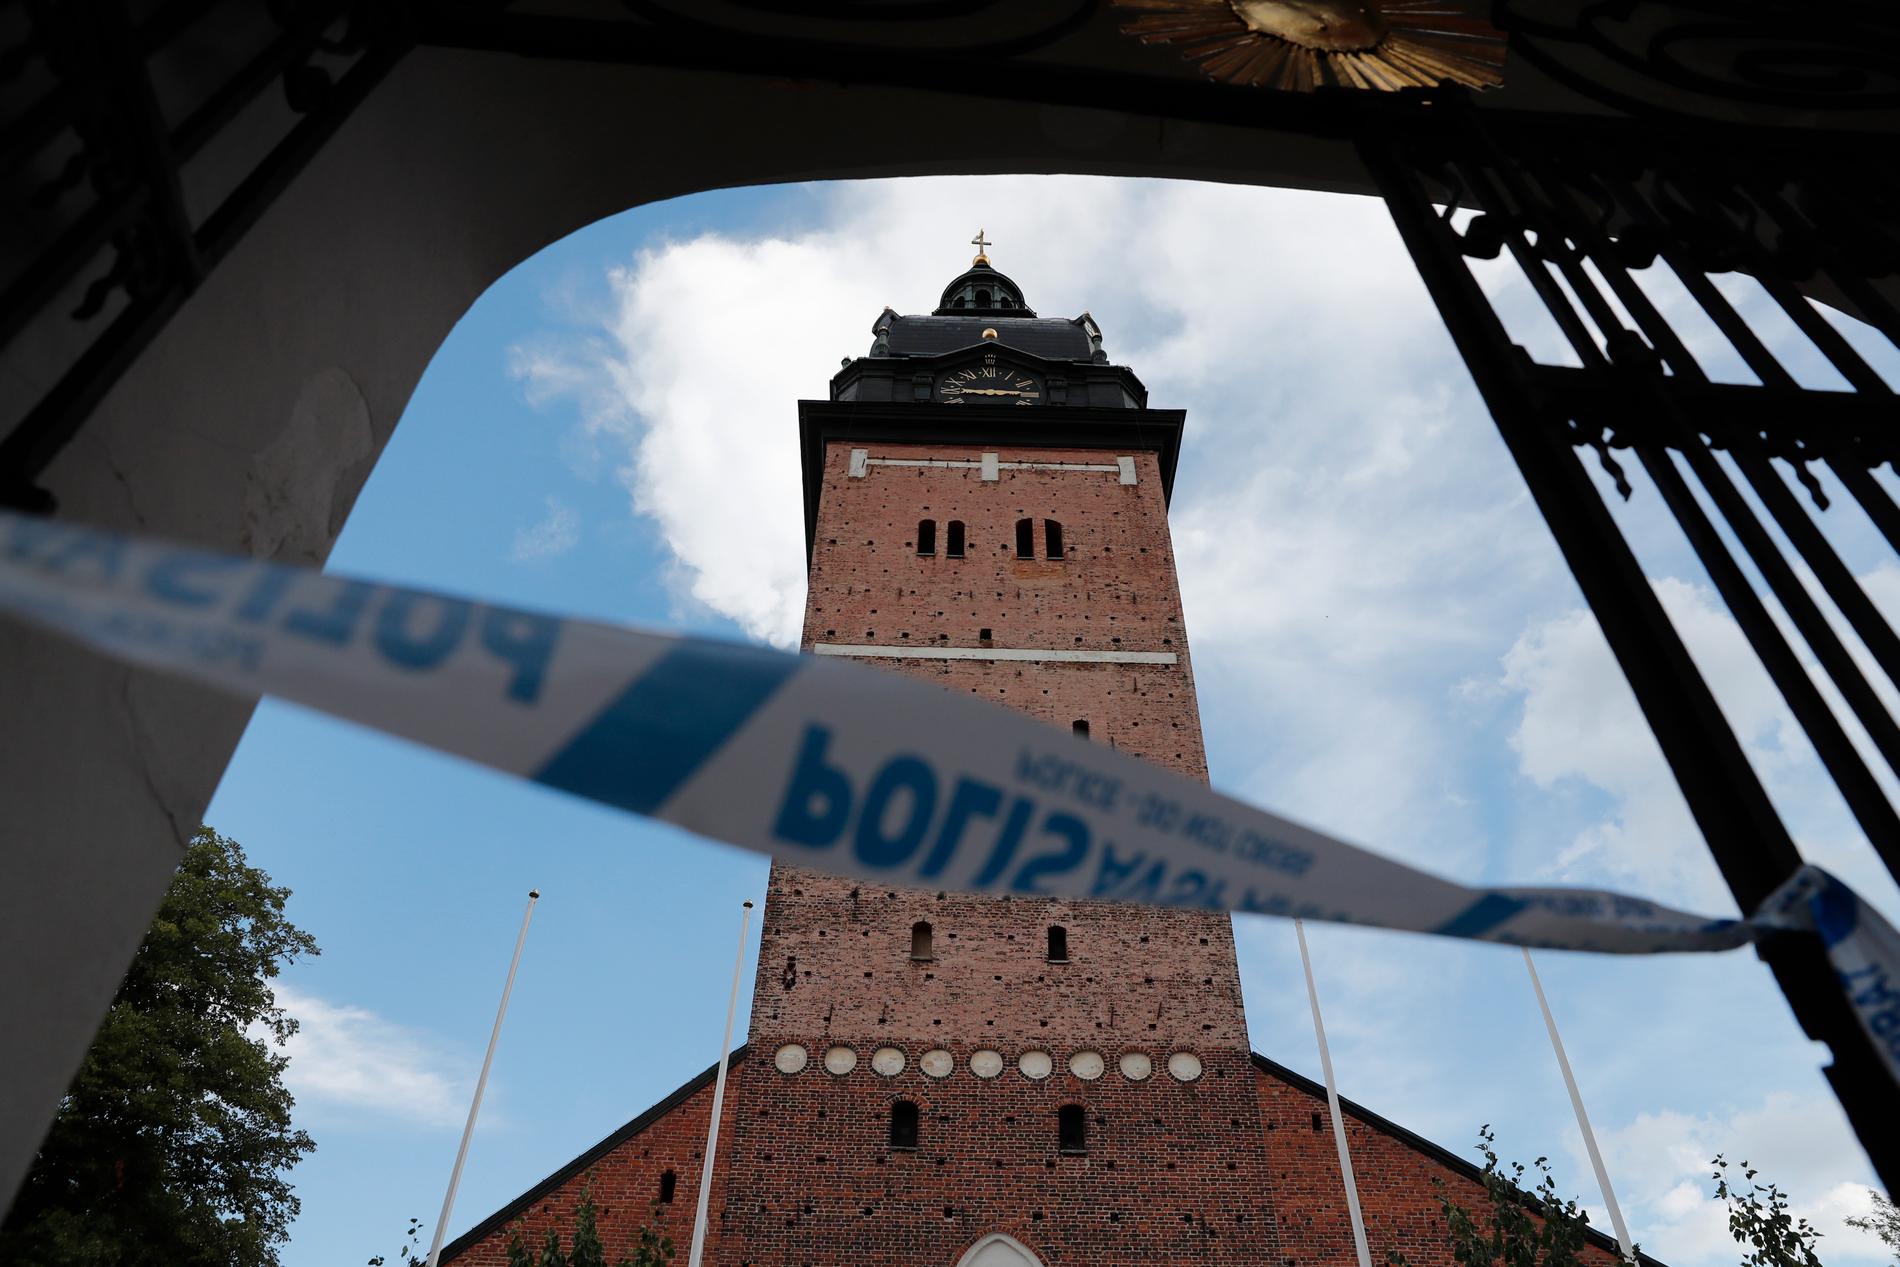 Domkyrkan i Strängnäs har utsatts för en stöld av föremål till ett ”högt värde”, uppger polisen.